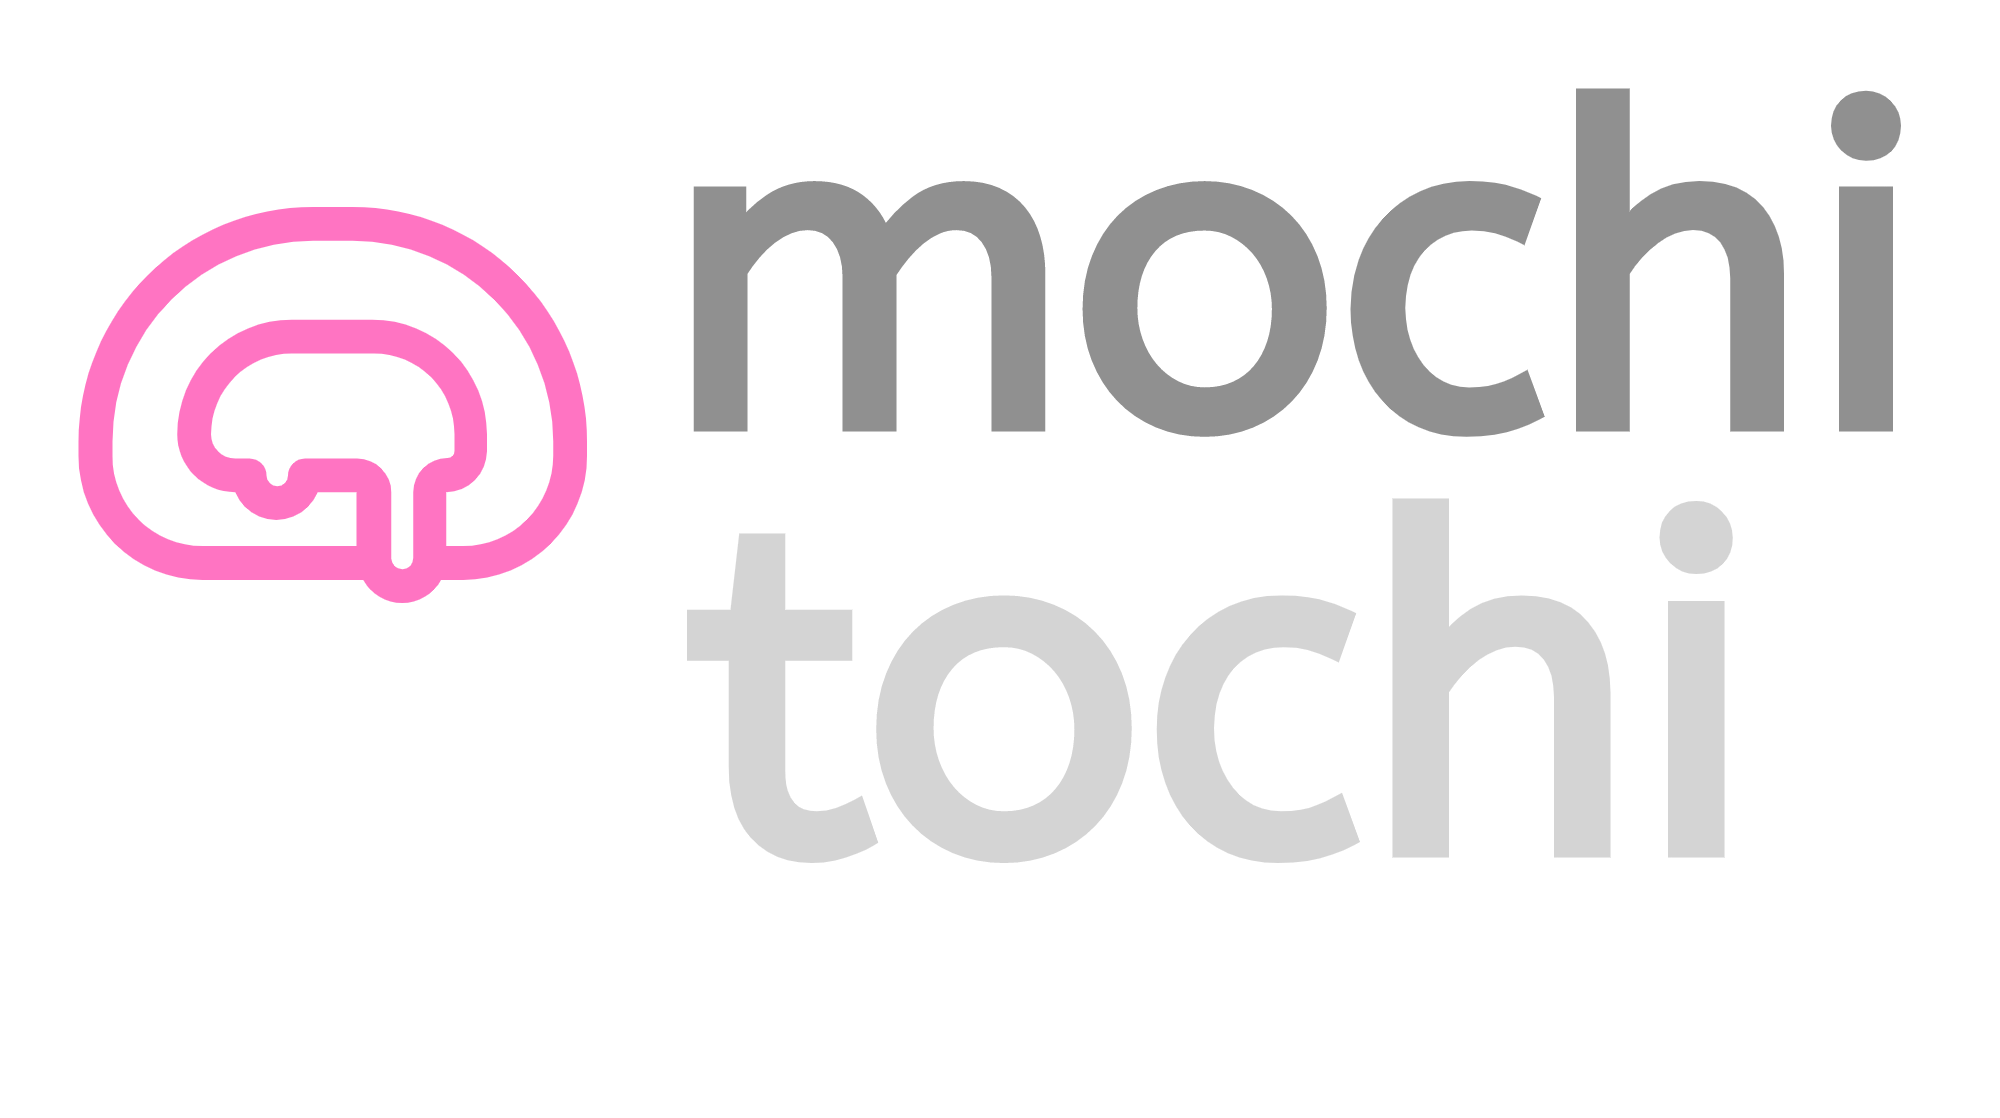 Mochi Tochi